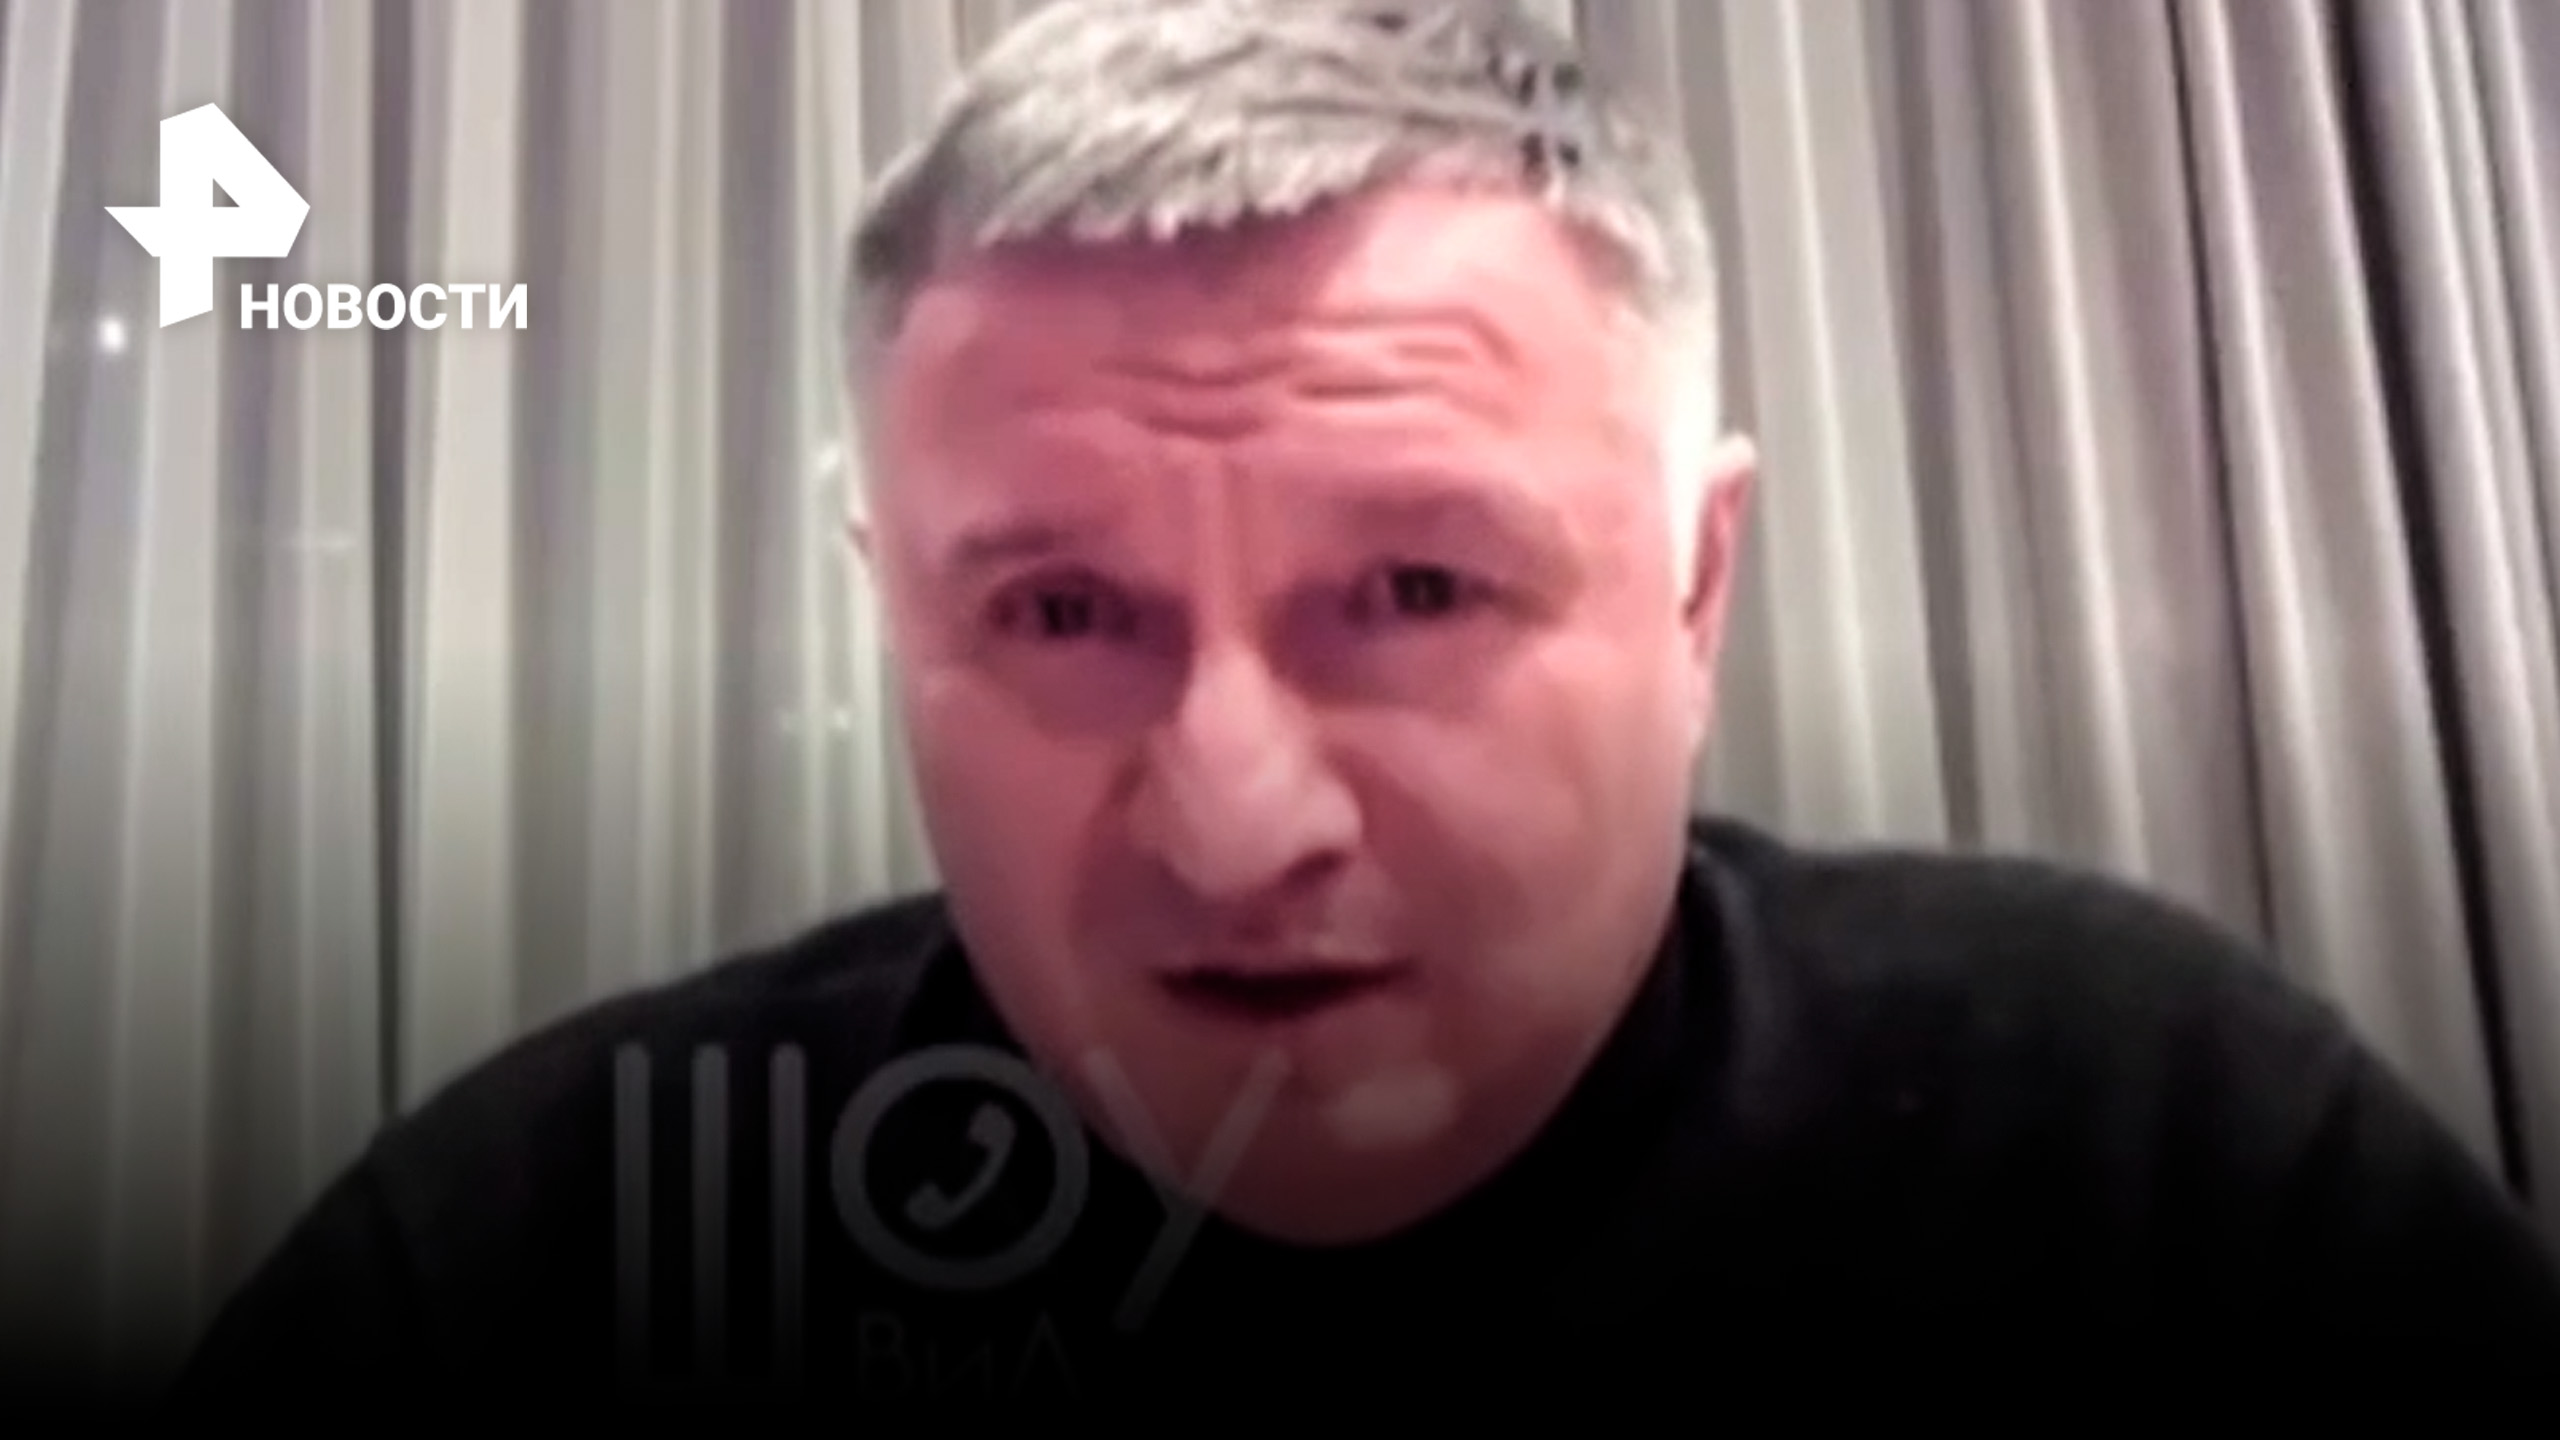 "Олигархи должны были захватить ДНР и Крым": что рассказал экс-глава МВД Украины Аваков в пранке